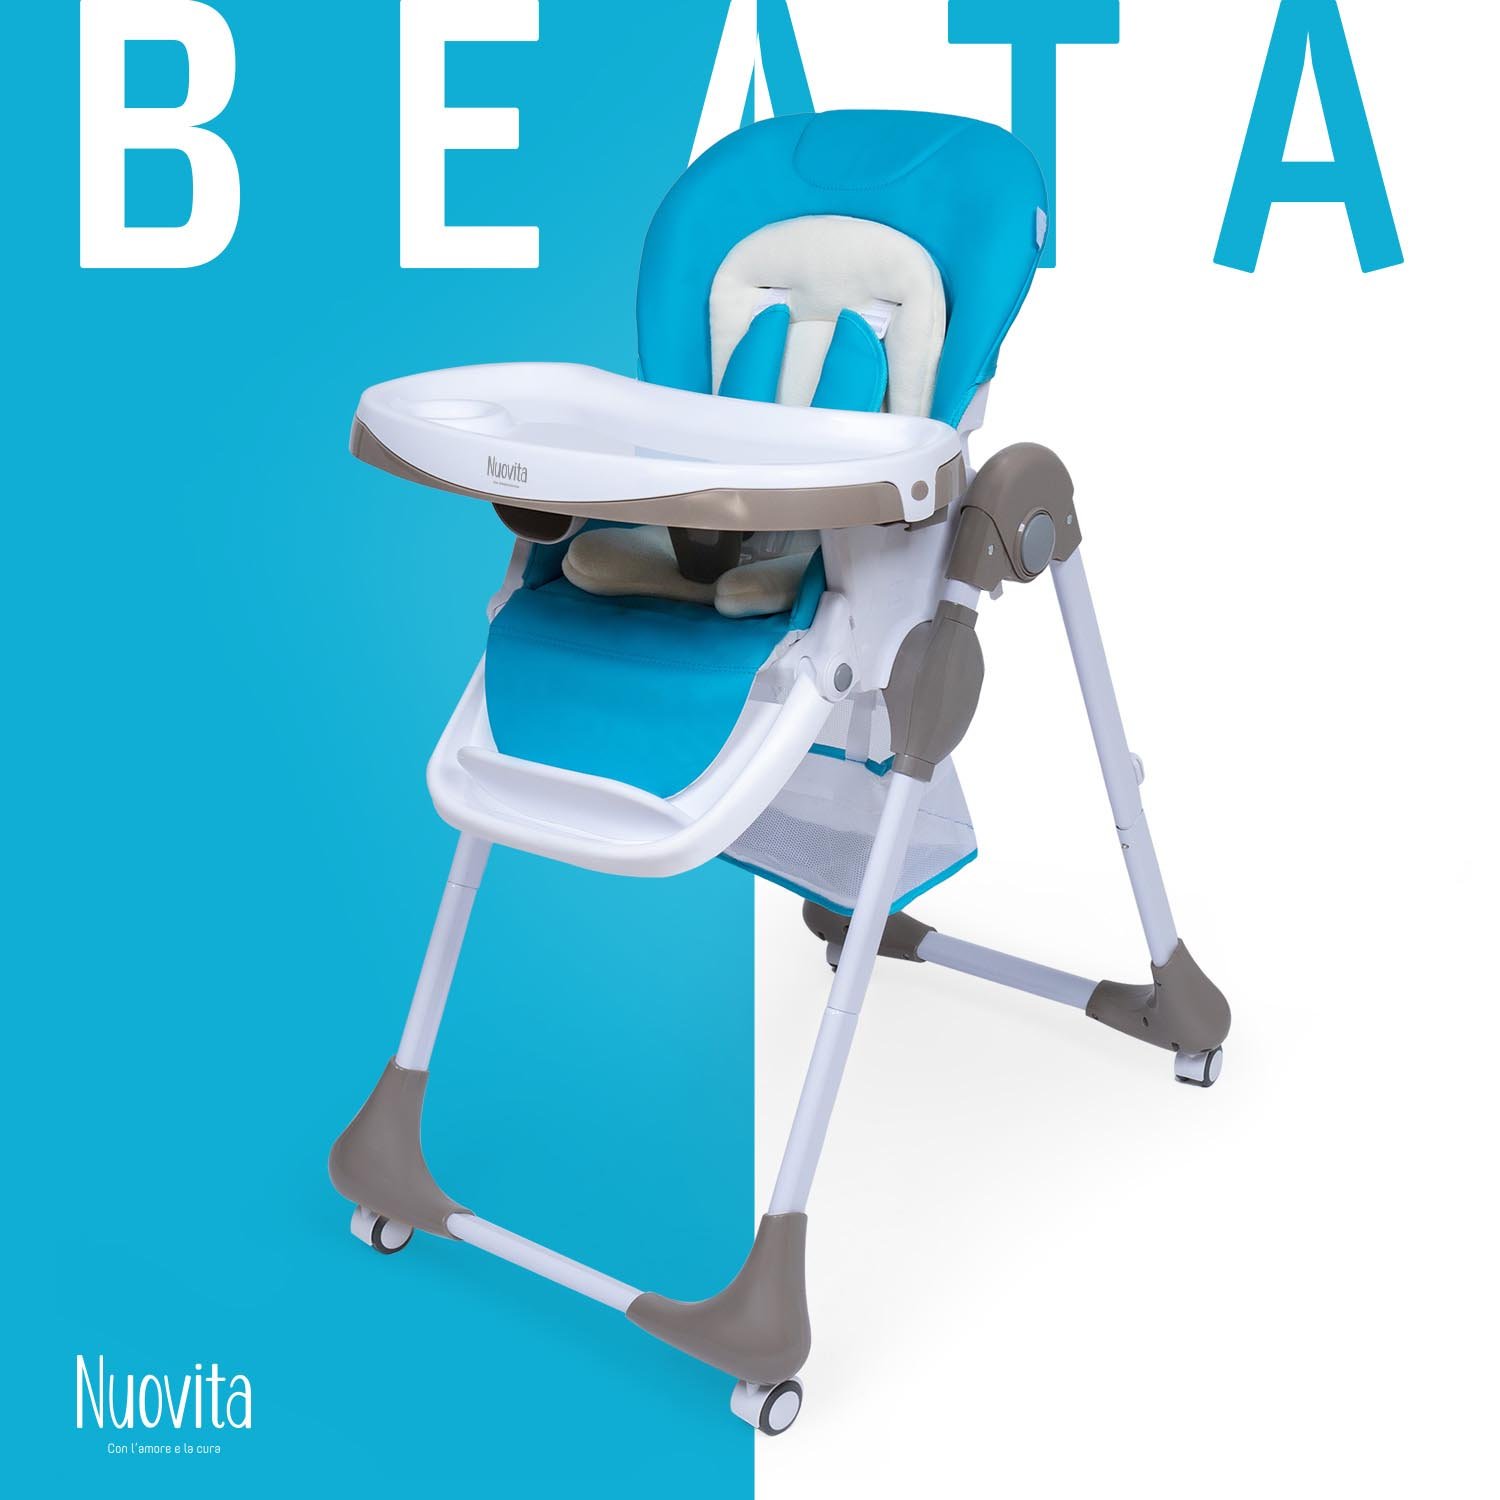 Стульчик для кормления Nuovita Beata (Acqua/Аква) стульчик для кормления nuovita beata